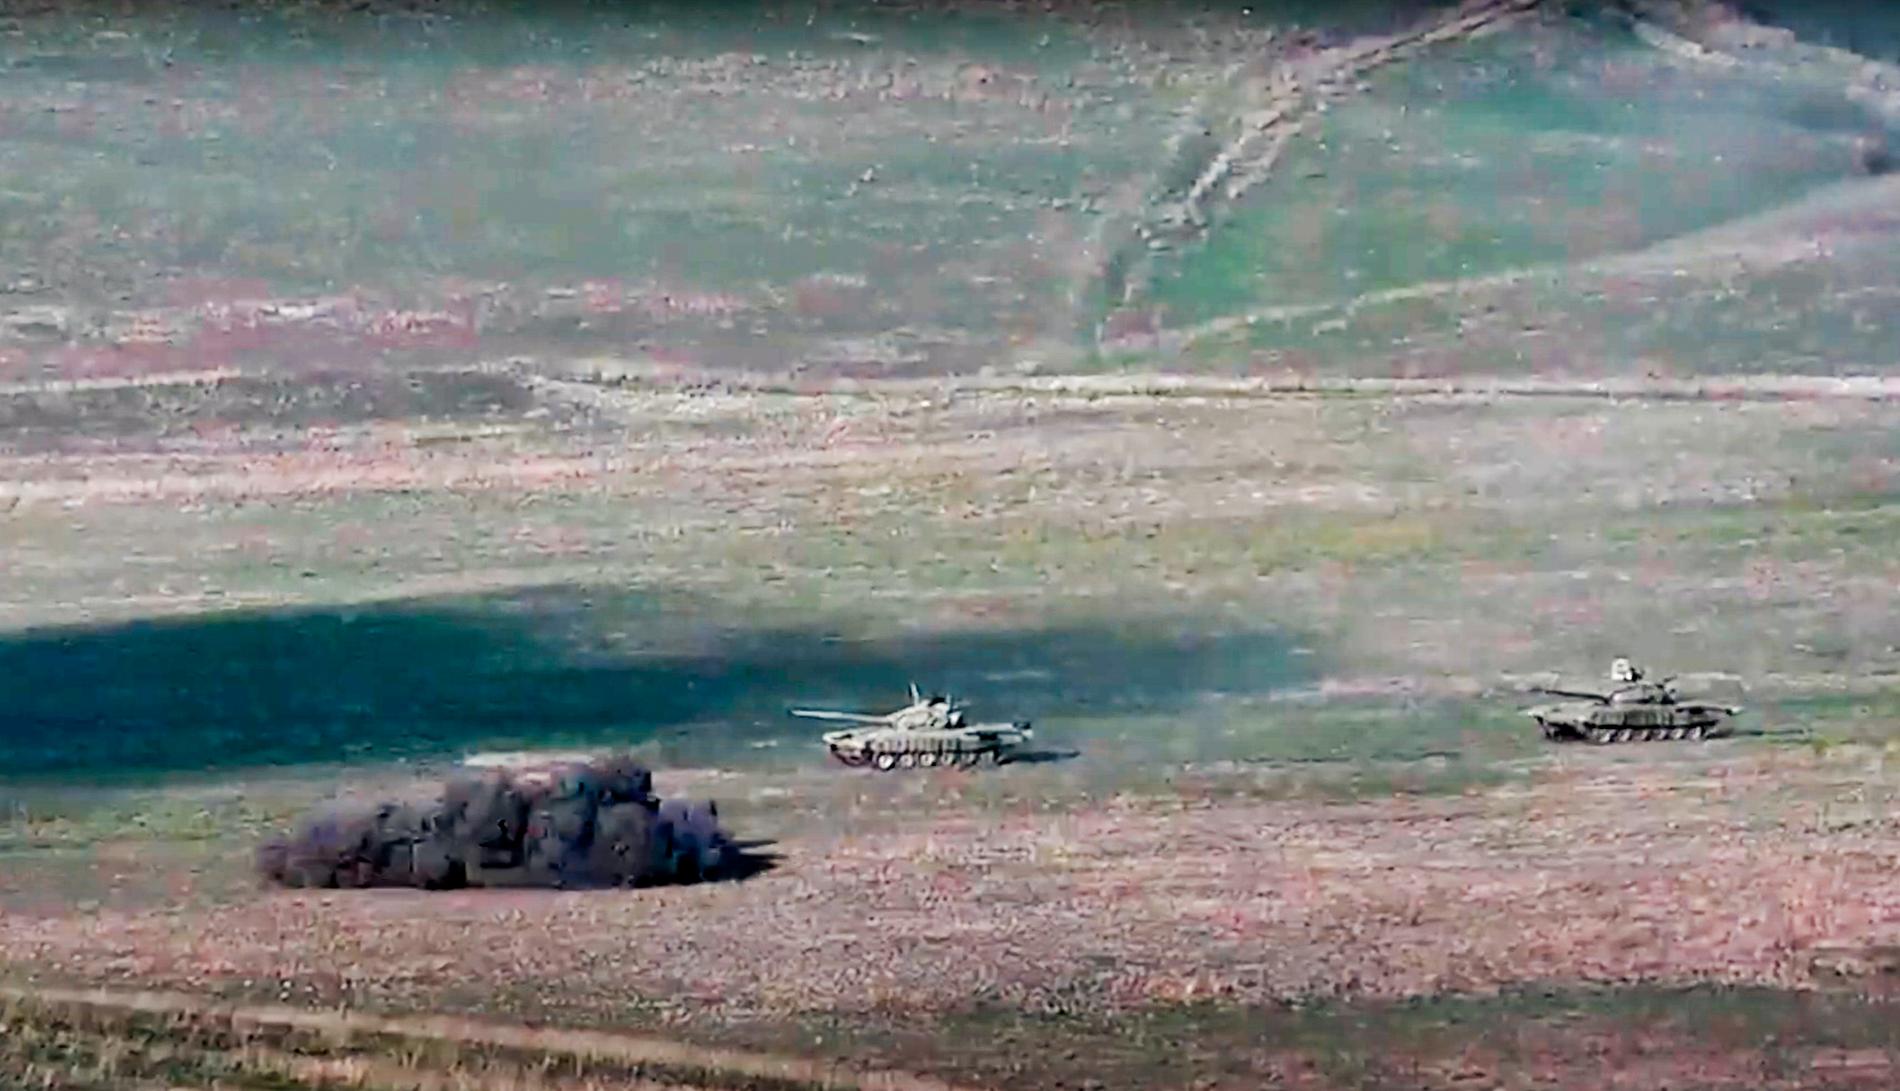 Armenisk beskjutning mot azeriska stridsvagnar. Bilden är från en film distribuerad av Armeniens försvarsdepartement.